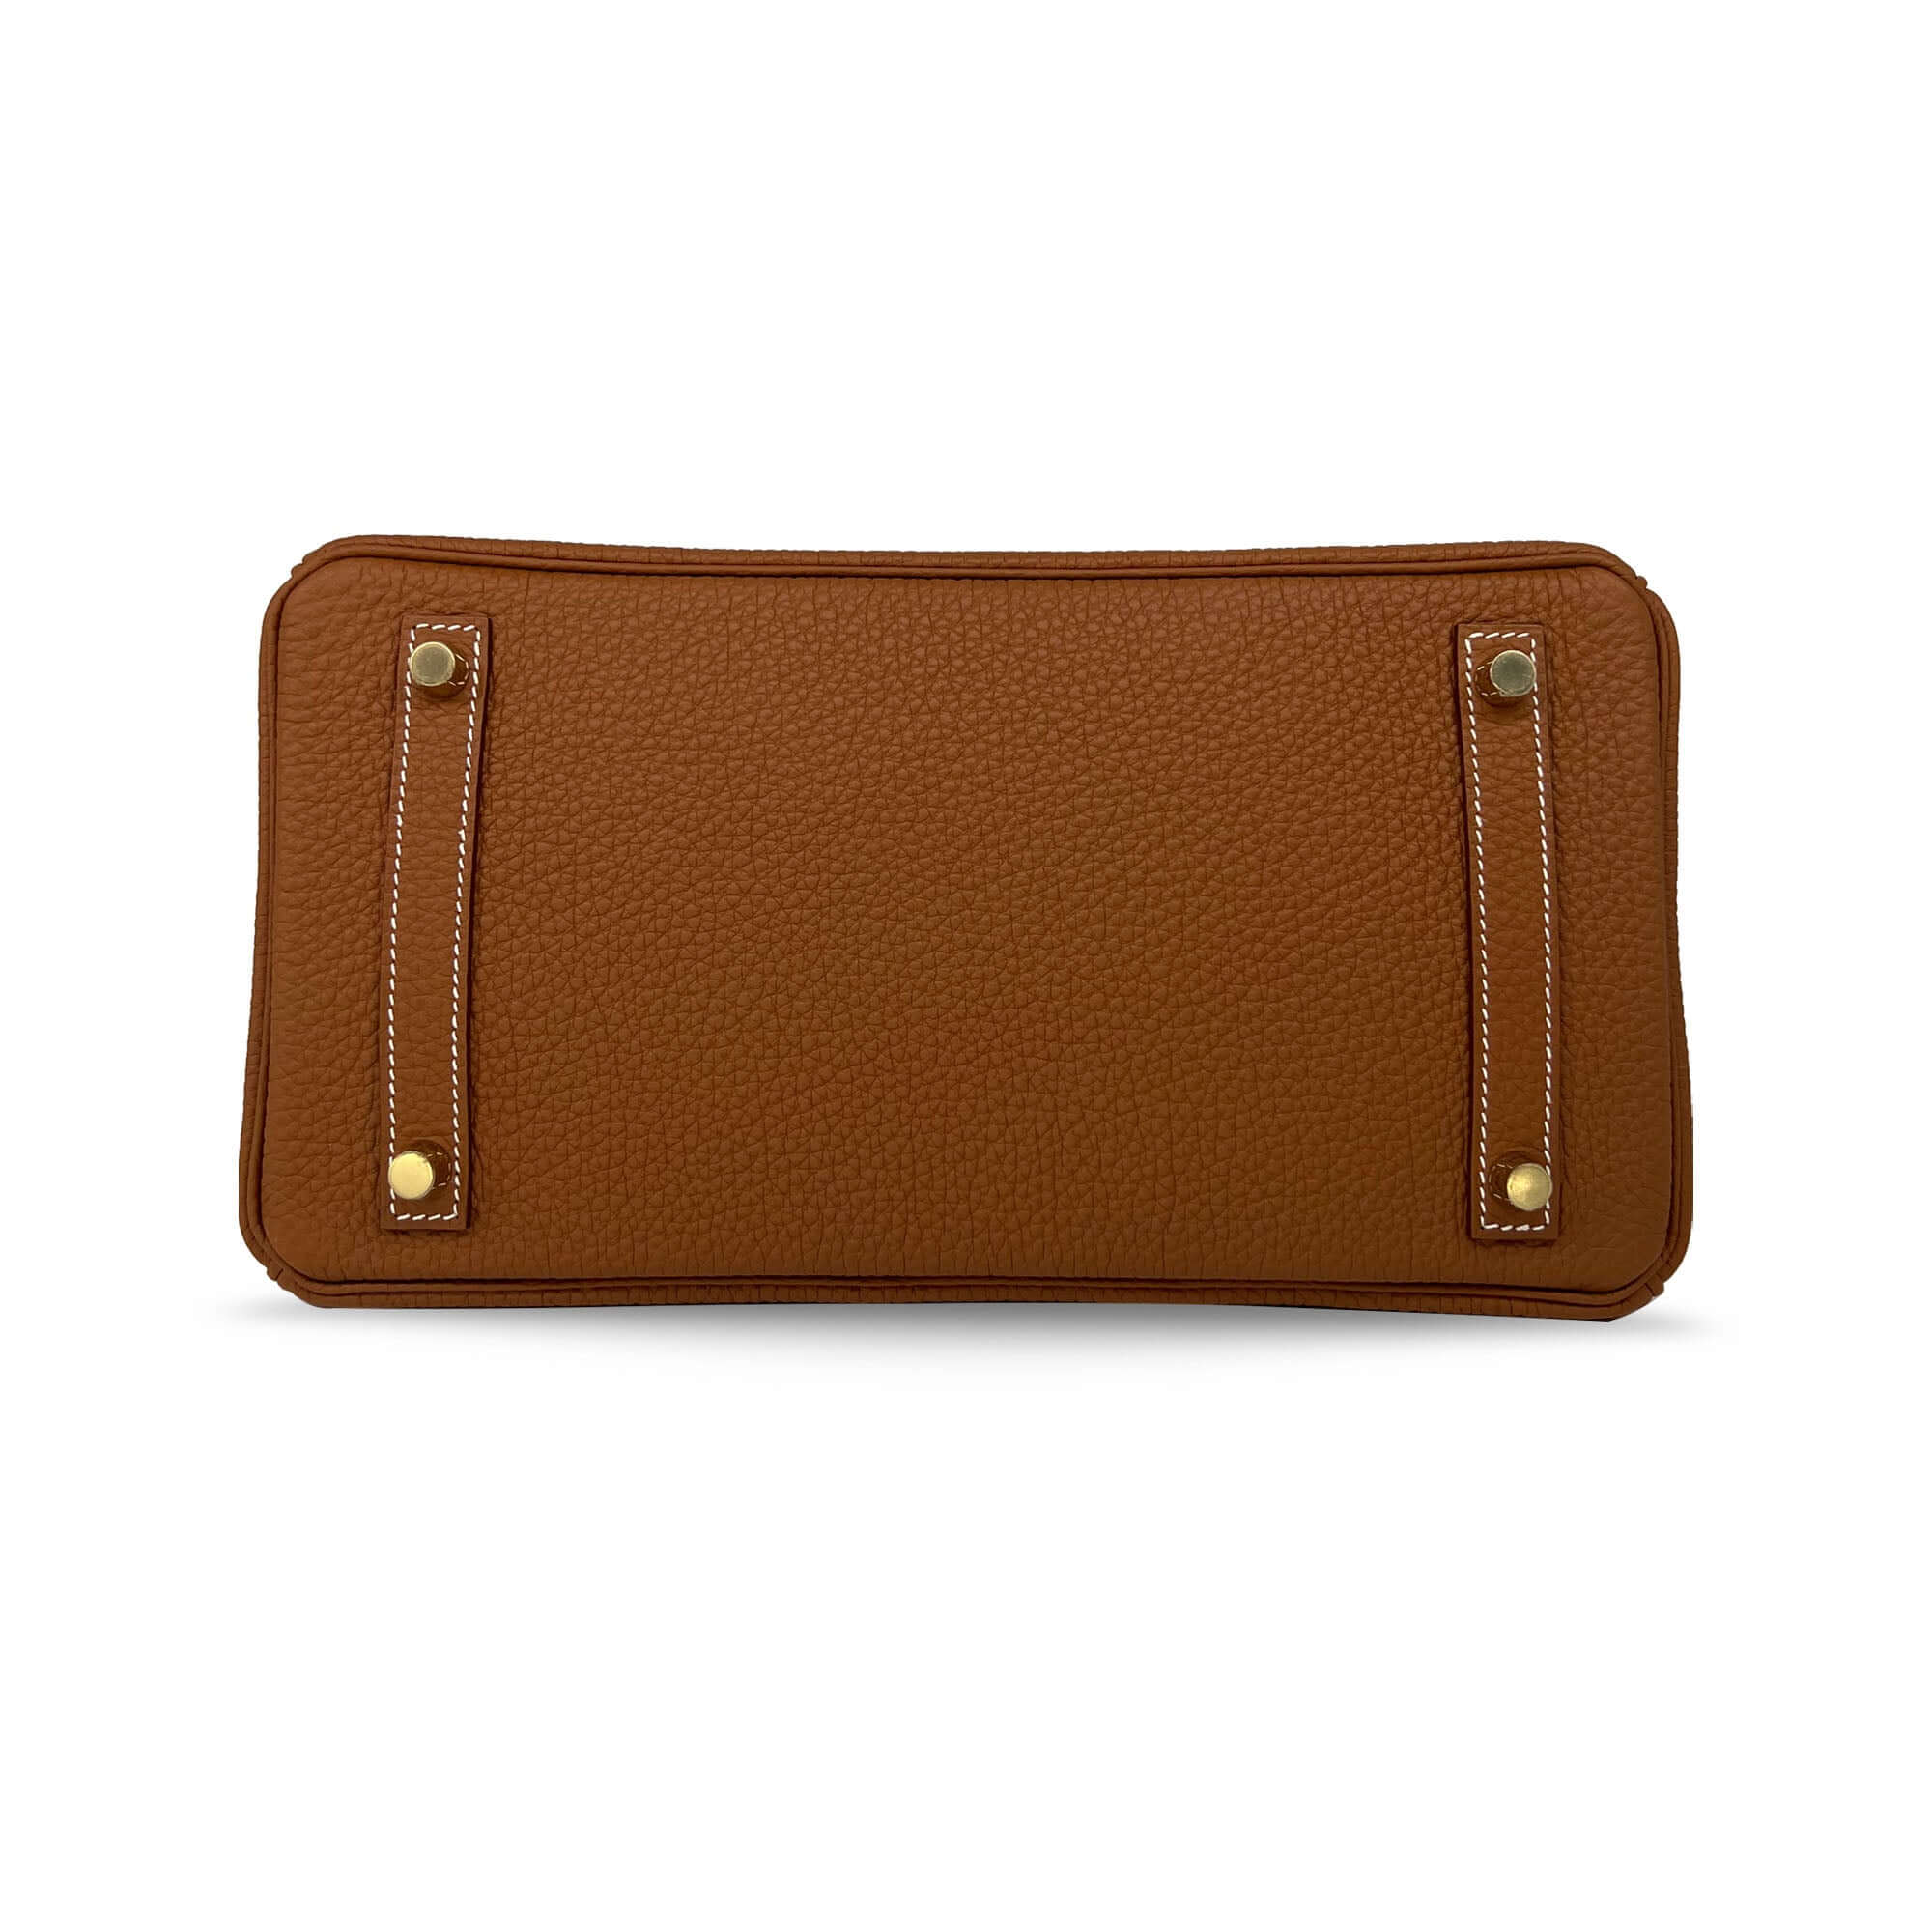 Top Quality brown Hermes Birkin Togo B30 GHW designer bag